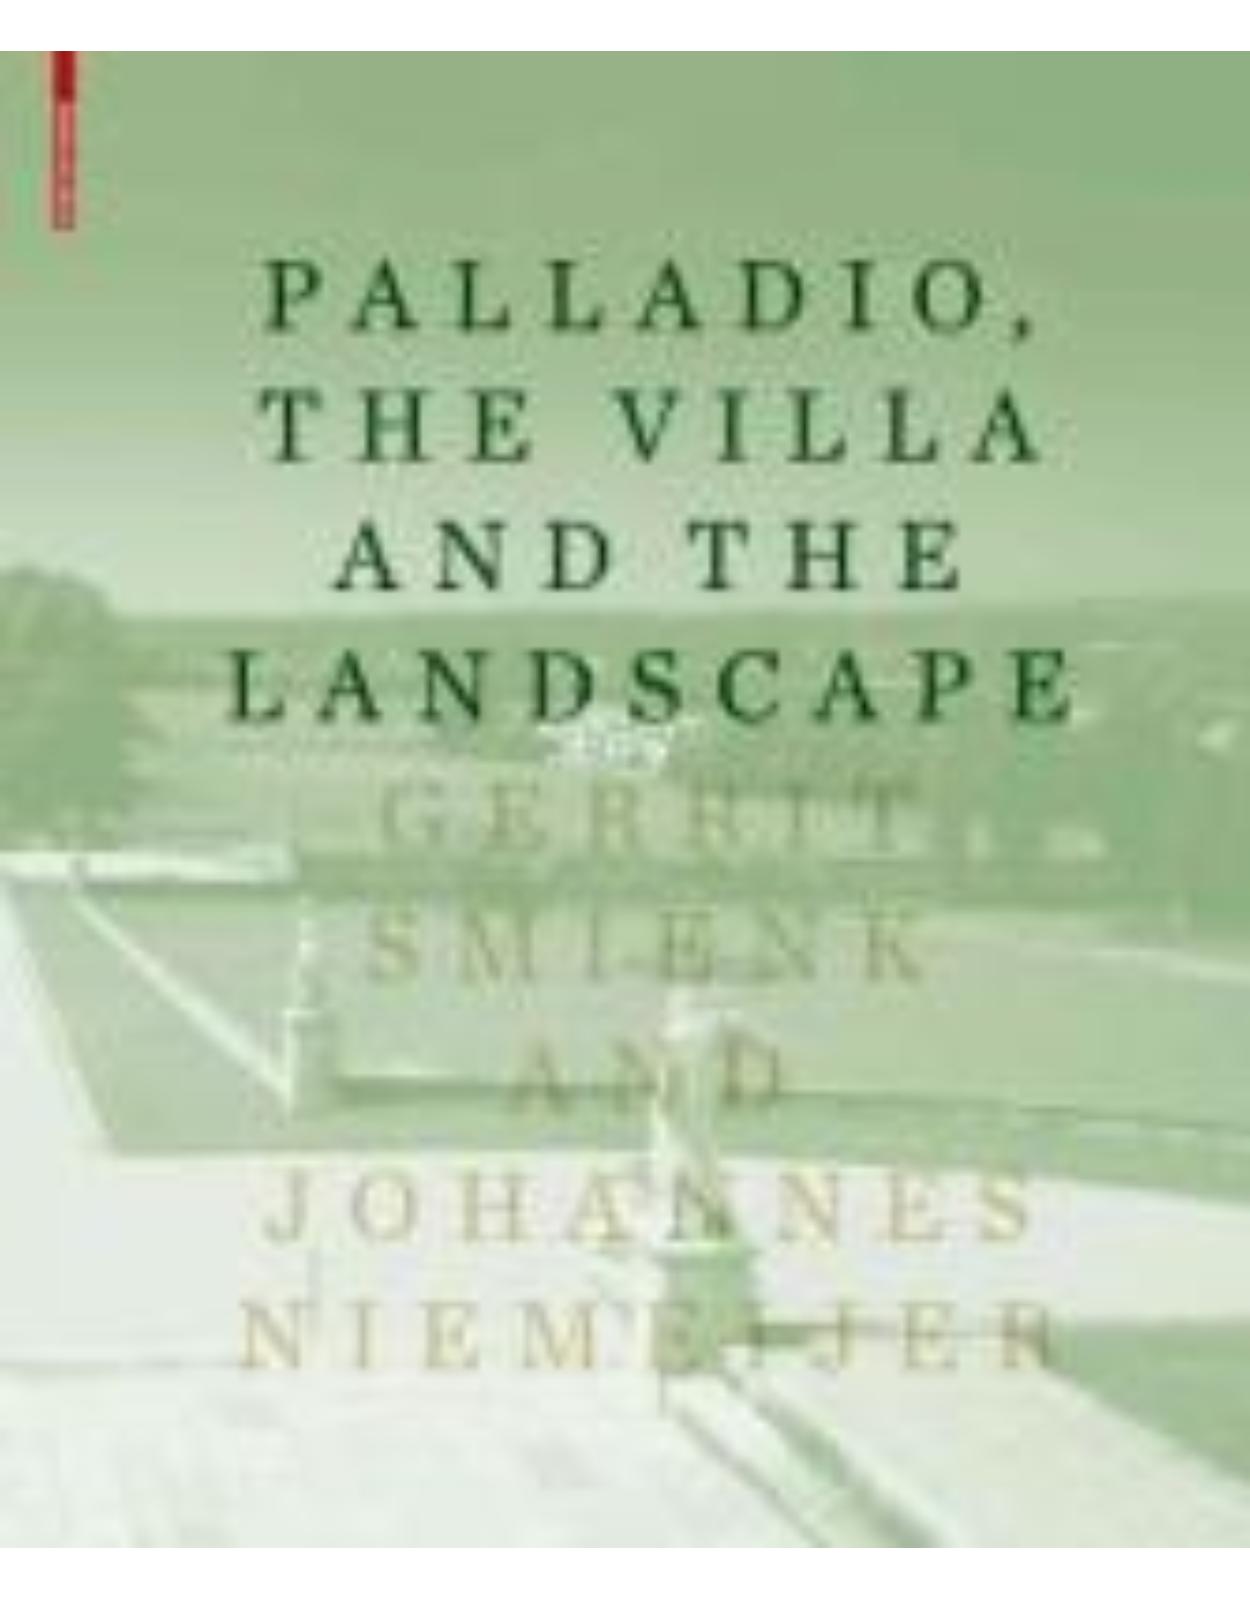 Palladio, the Villa and the Landscape